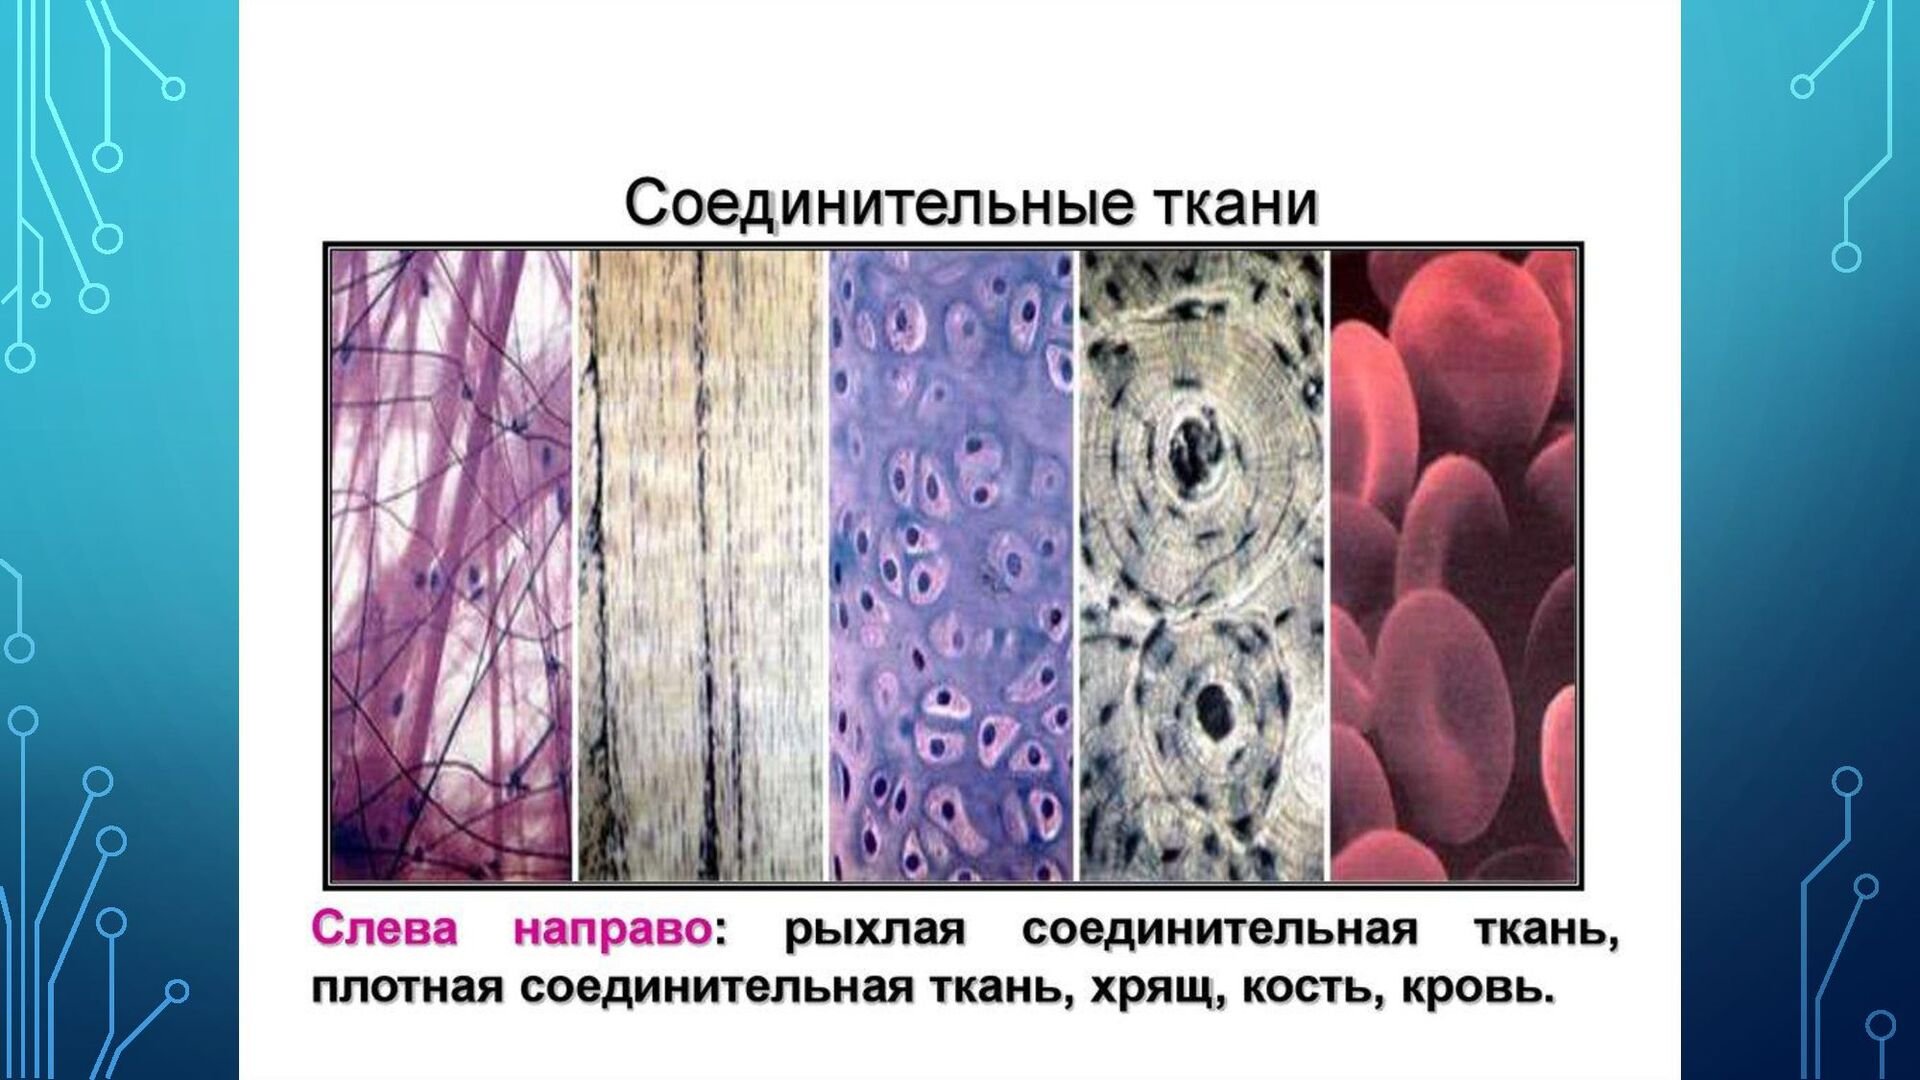 Вид соединительной ткани хряща. Соединительная ткань кровь под микроскопом. Рыхлая соединительная ткань ЕГЭ. Рыхлая соединительная ткань 8 класс биология. Скелетная соединительная ткань.